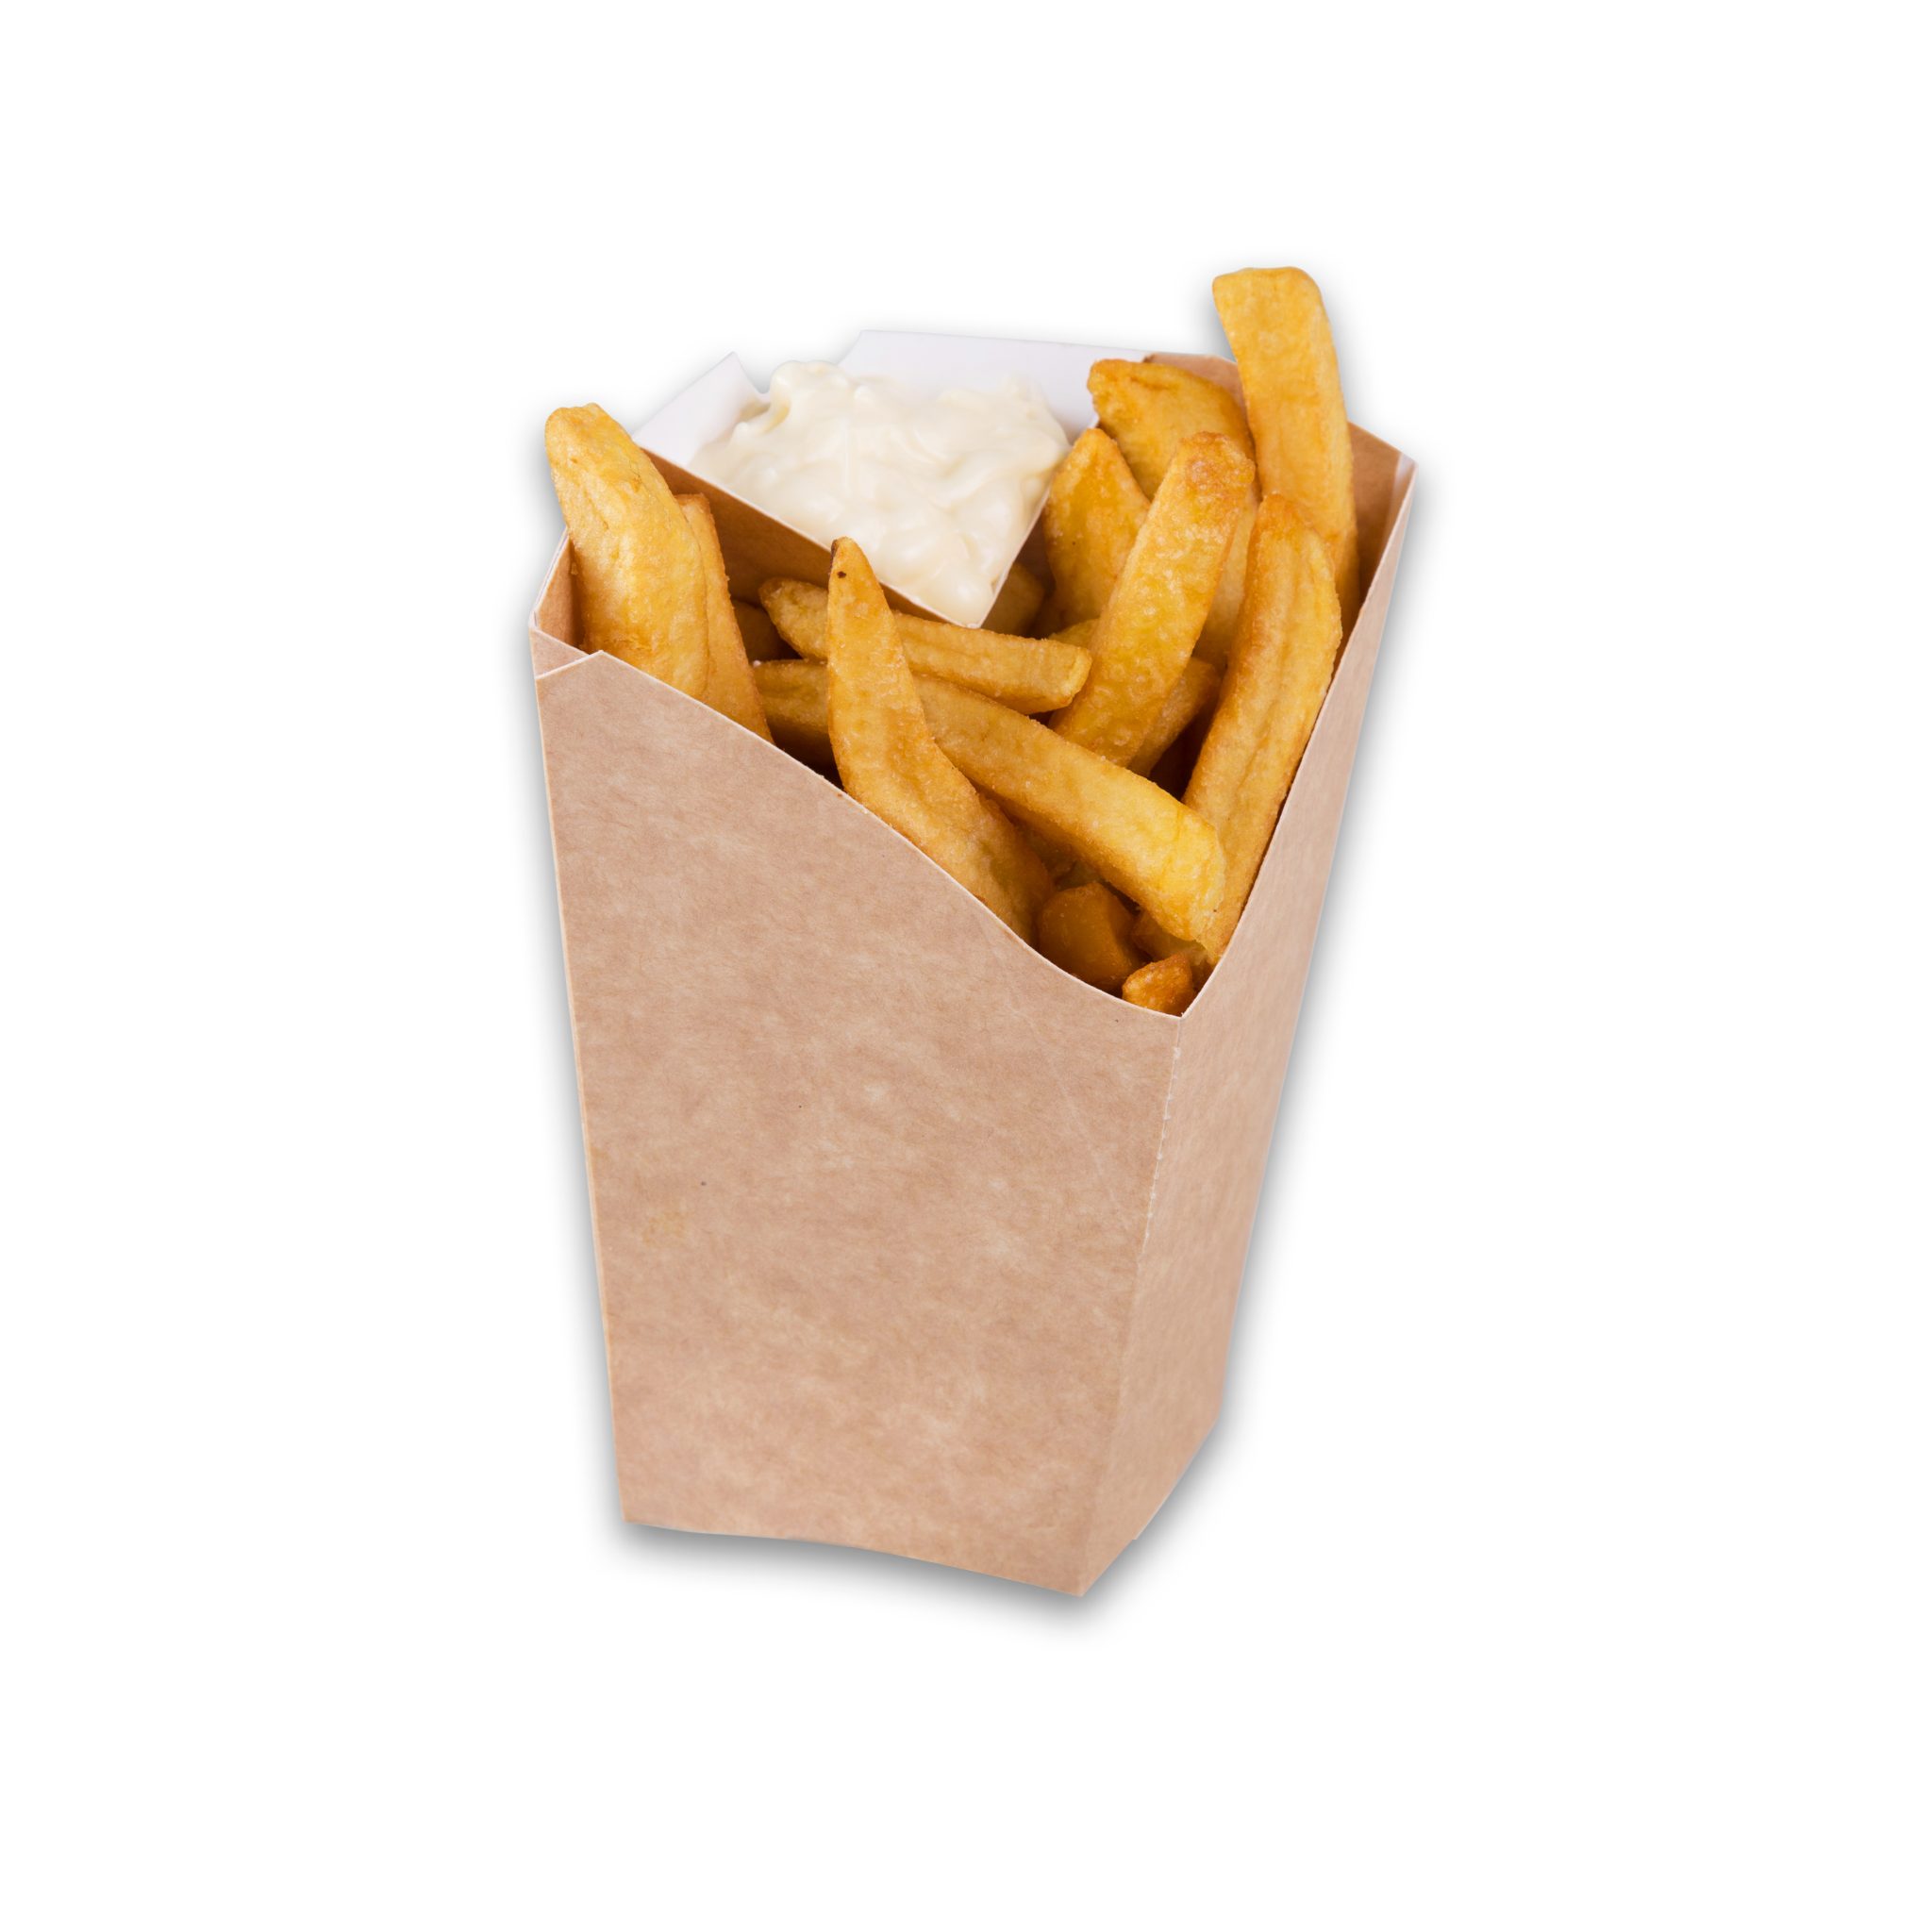 Chip 'n Dip Table Top frietbakje met sausvak van Fonkels